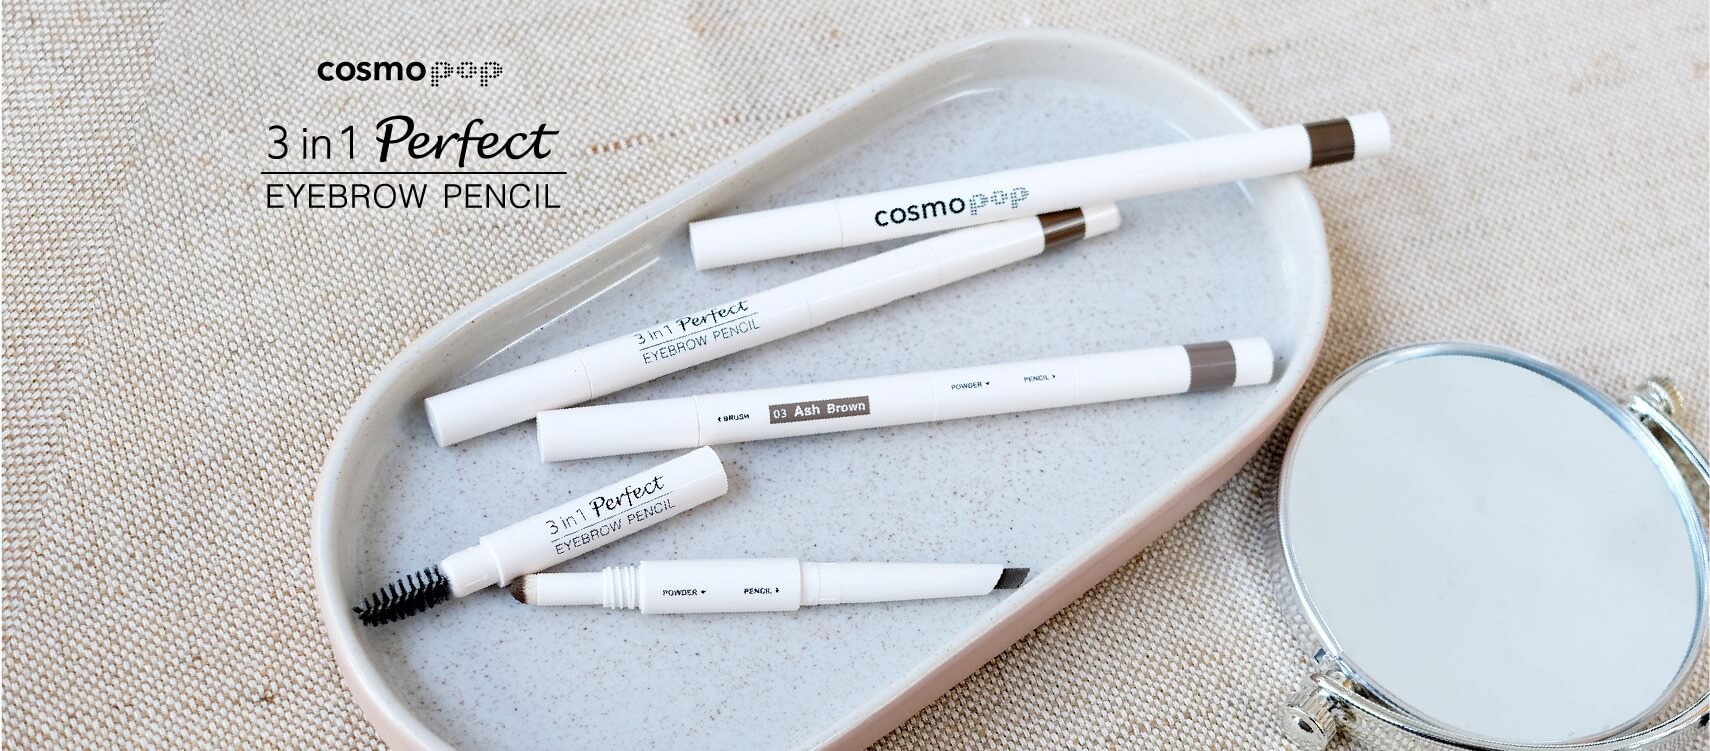 CosmoPop Eyebrow 3in1 Perfect Eyebrow Pencil  ดินสอเขียนคิ้วมาในรูปแบบแท่ง  ที่ใช้งานได้ 3 ฟังก์ชั่น ออกแบบพิเศษเพื่อการเขียนคิ้วลุคธรรมชาติโดยเฉพาะ เขียนลื่น สร้างกรอบคิ้วได้ง่าย ด้วยเนื้อสีแบบเครยอนให้สีสม่ำเสมอ พร้อมเพิ่มมิติให้คิ้วด้วยคุชชั่นหัวฟองน้ำสำหรับเบลนด์ให้ฟุ้งและแปรงปัดที่ช่วยจัดรูปคิ้วให้สวยได้รูปเนียนเป็นธรรมชาติ